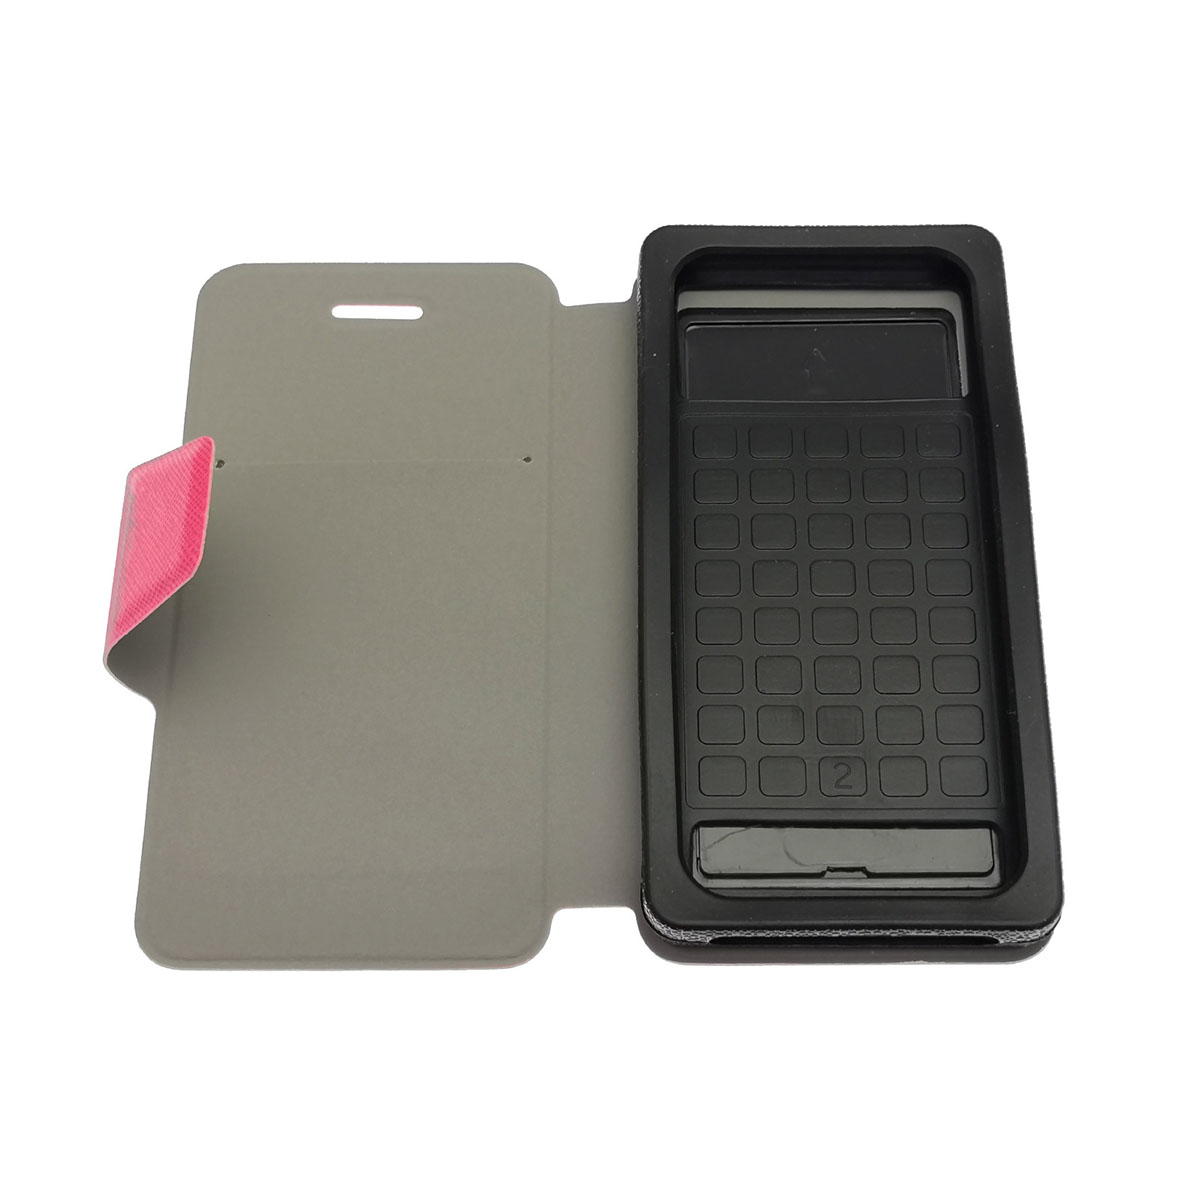 Чехол книжка универсальная для смартфонов размером 4.3- 4.5, экокожа, магнит, визитница, цвет розовый.